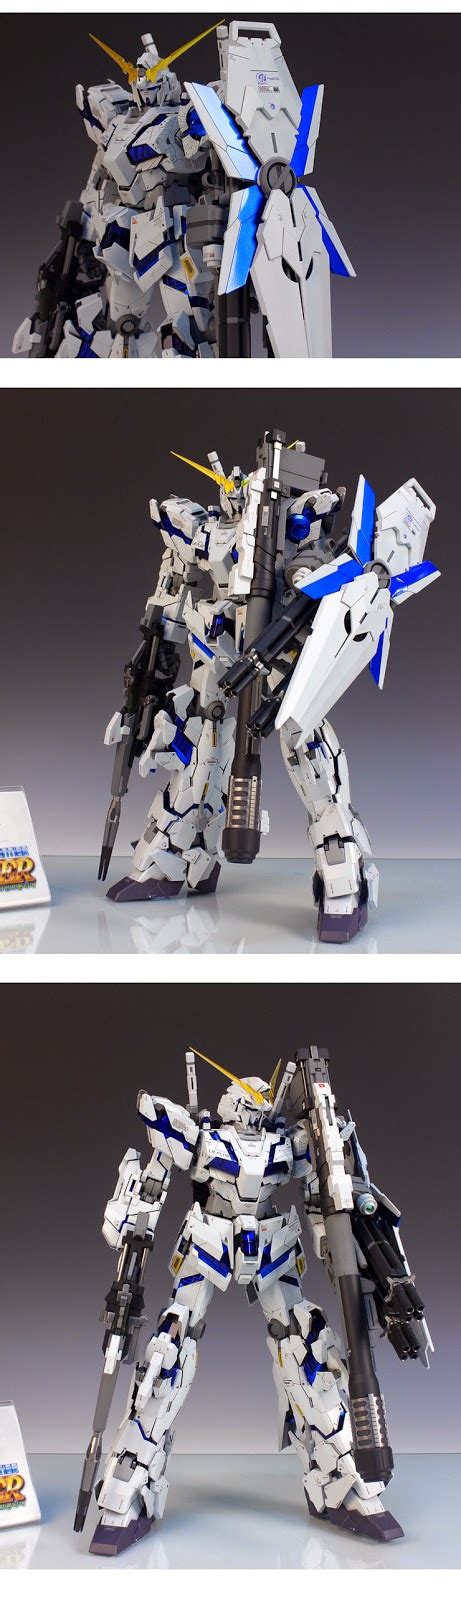 Gundam Guy Pg 160 Unicorn Gundam Customized Build